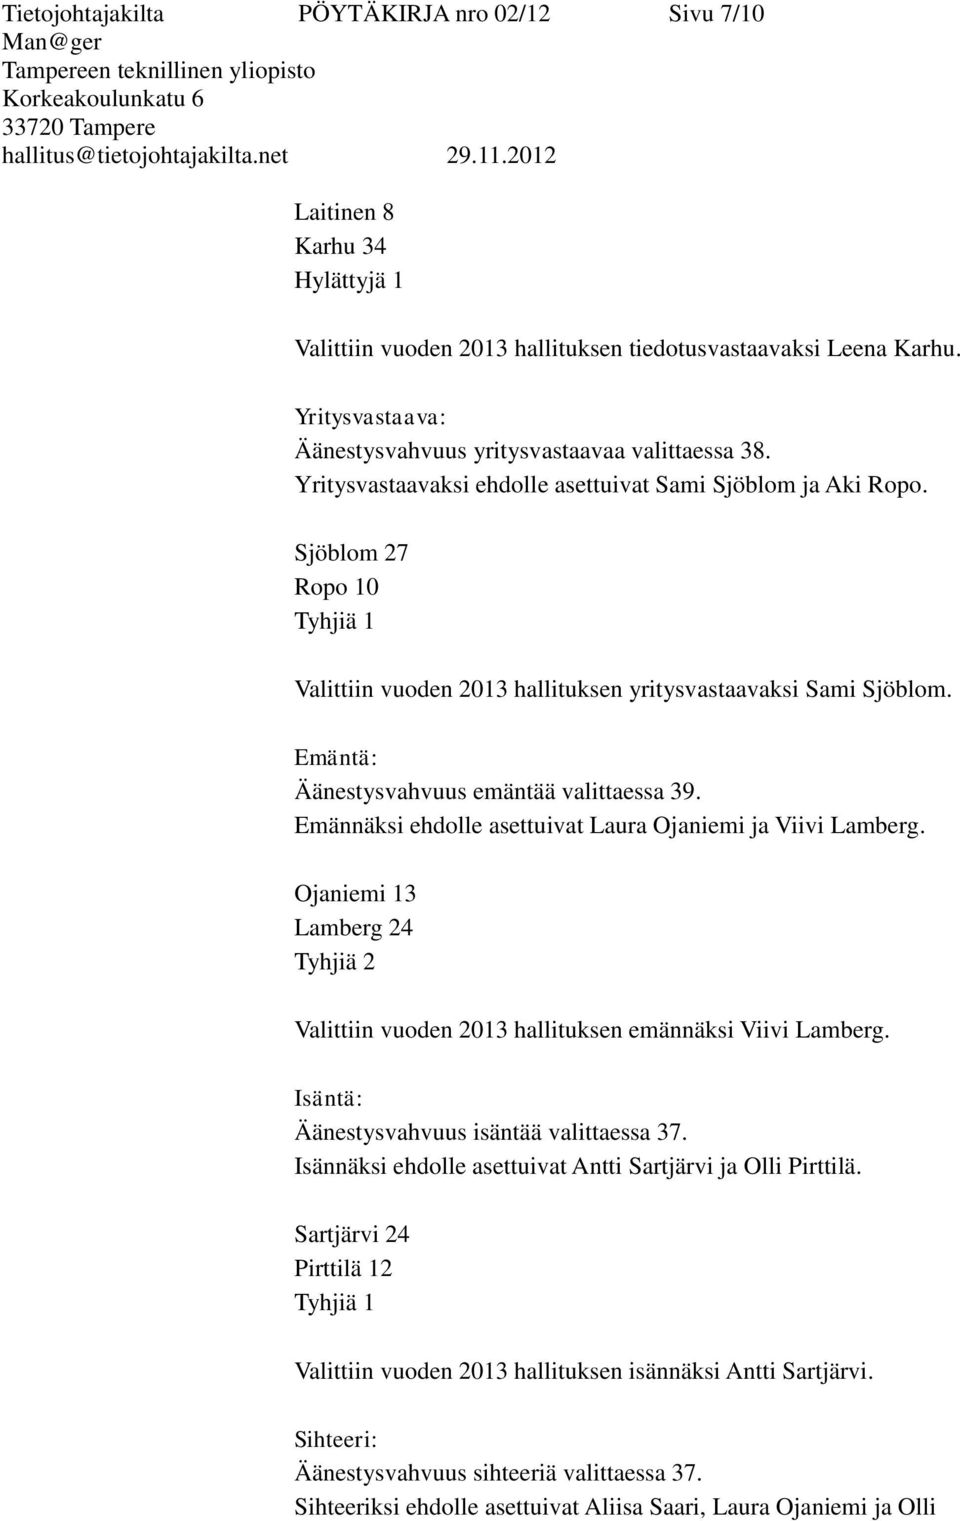 Sjöblom 27 Ropo 10 Tyhjiä 1 Valittiin vuoden 2013 hallituksen yritysvastaavaksi Sami Sjöblom. Emäntä: Äänestysvahvuus emäntää valittaessa 39.